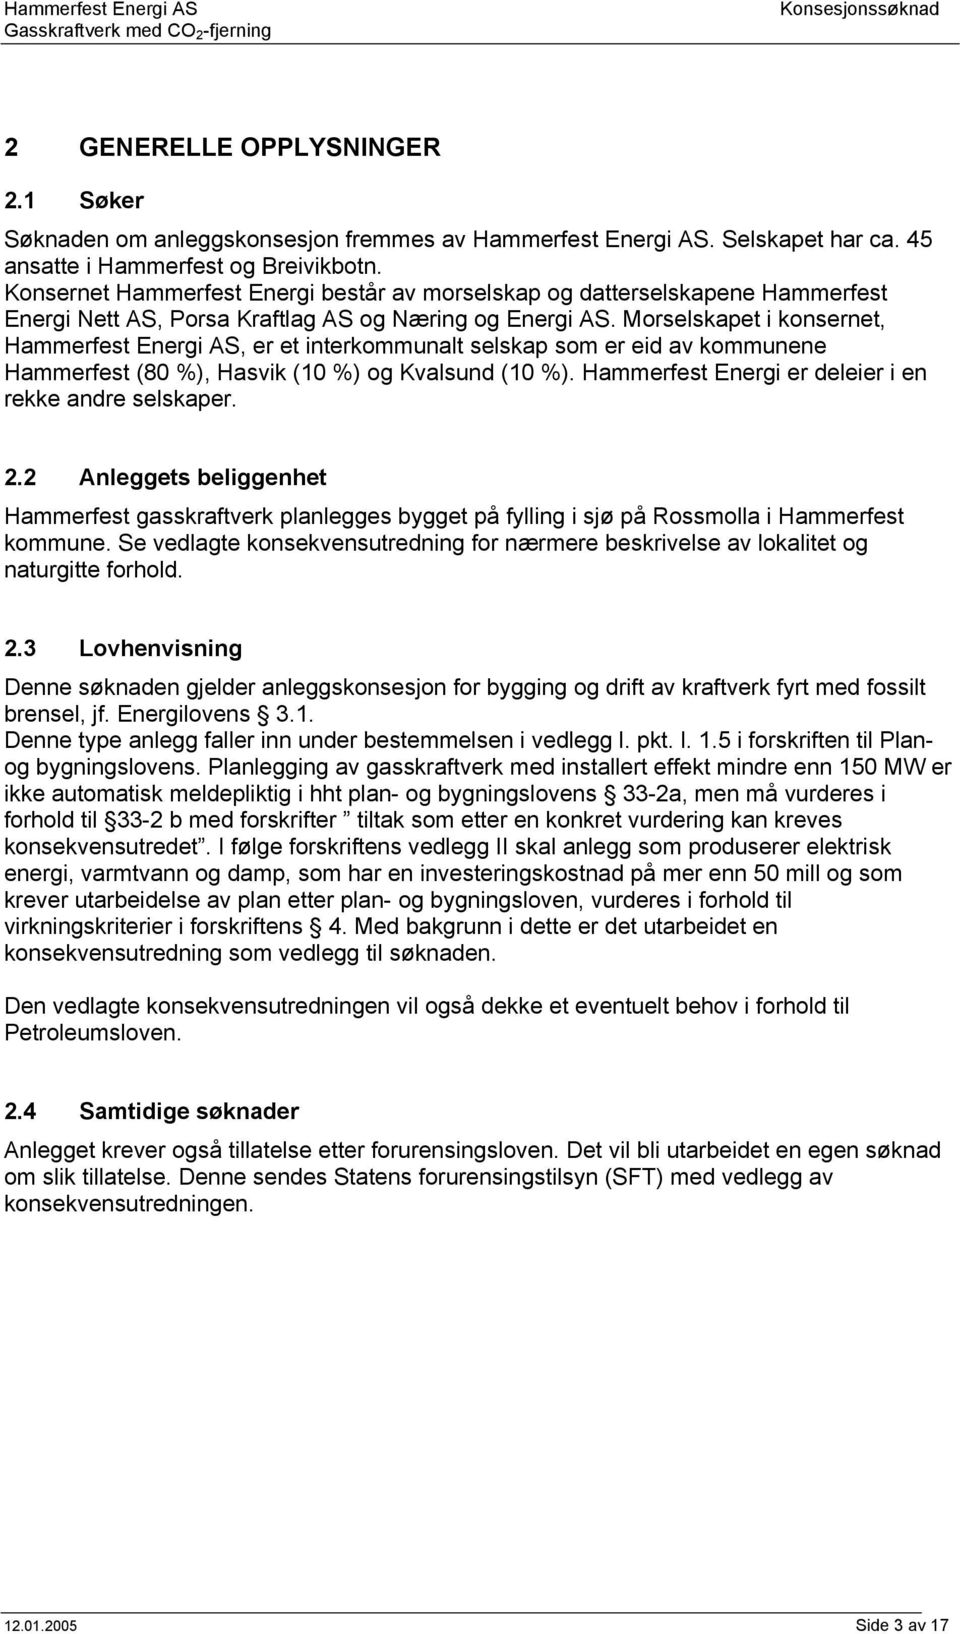 Morselskapet i konsernet, Hammerfest Energi AS, er et interkommunalt selskap som er eid av kommunene Hammerfest (80 %), Hasvik (10 %) og Kvalsund (10 %).